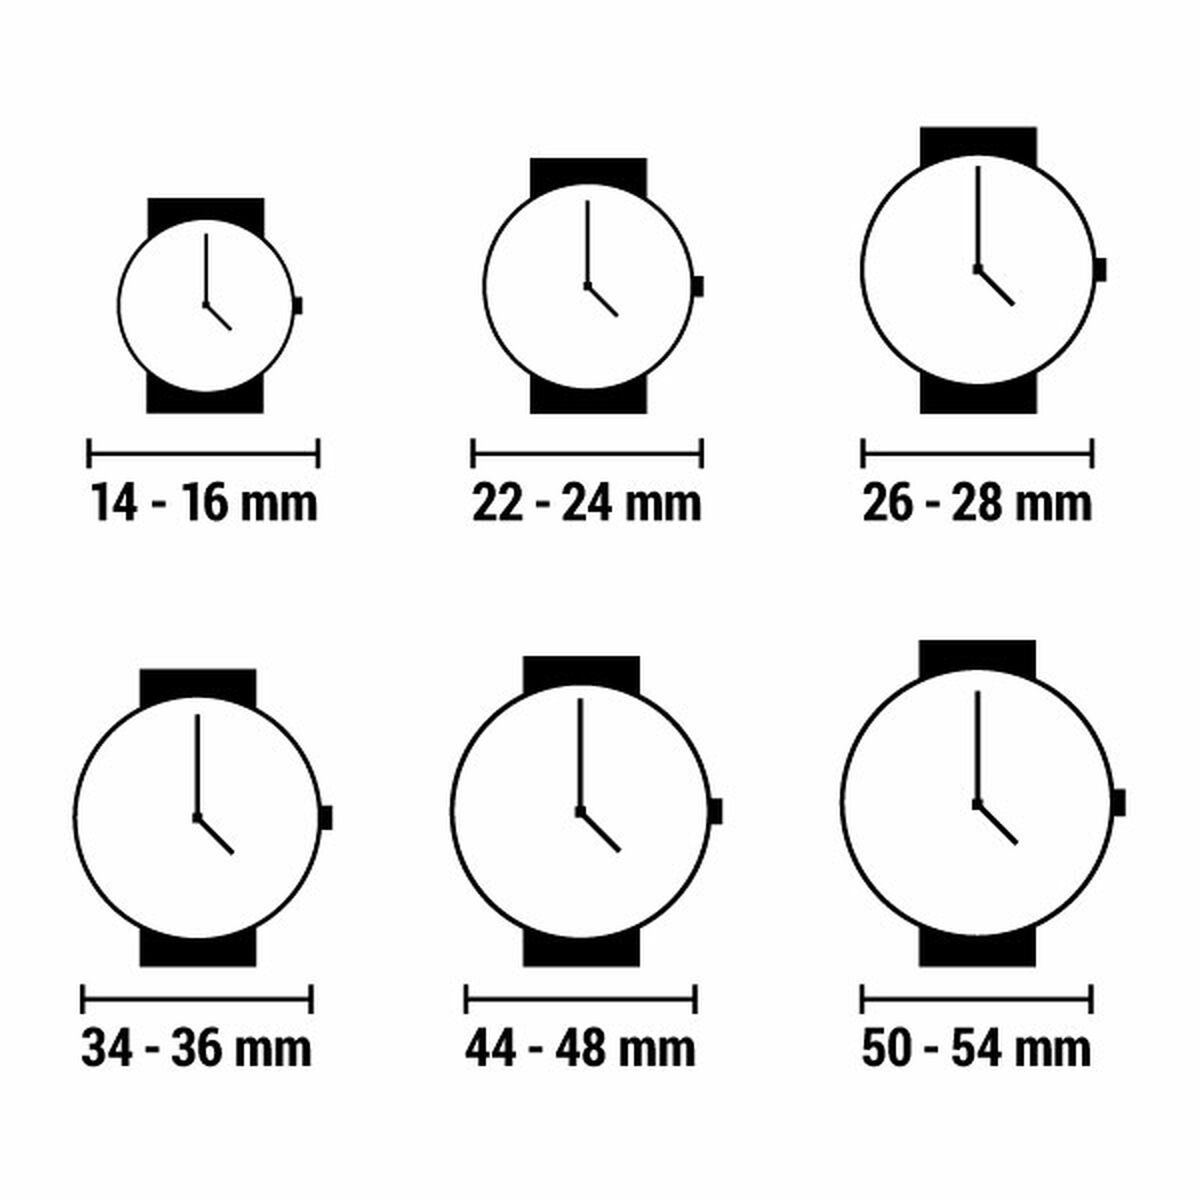 Horloge Dames Juicy Couture JC1326RGNV (Ø 34 mm)